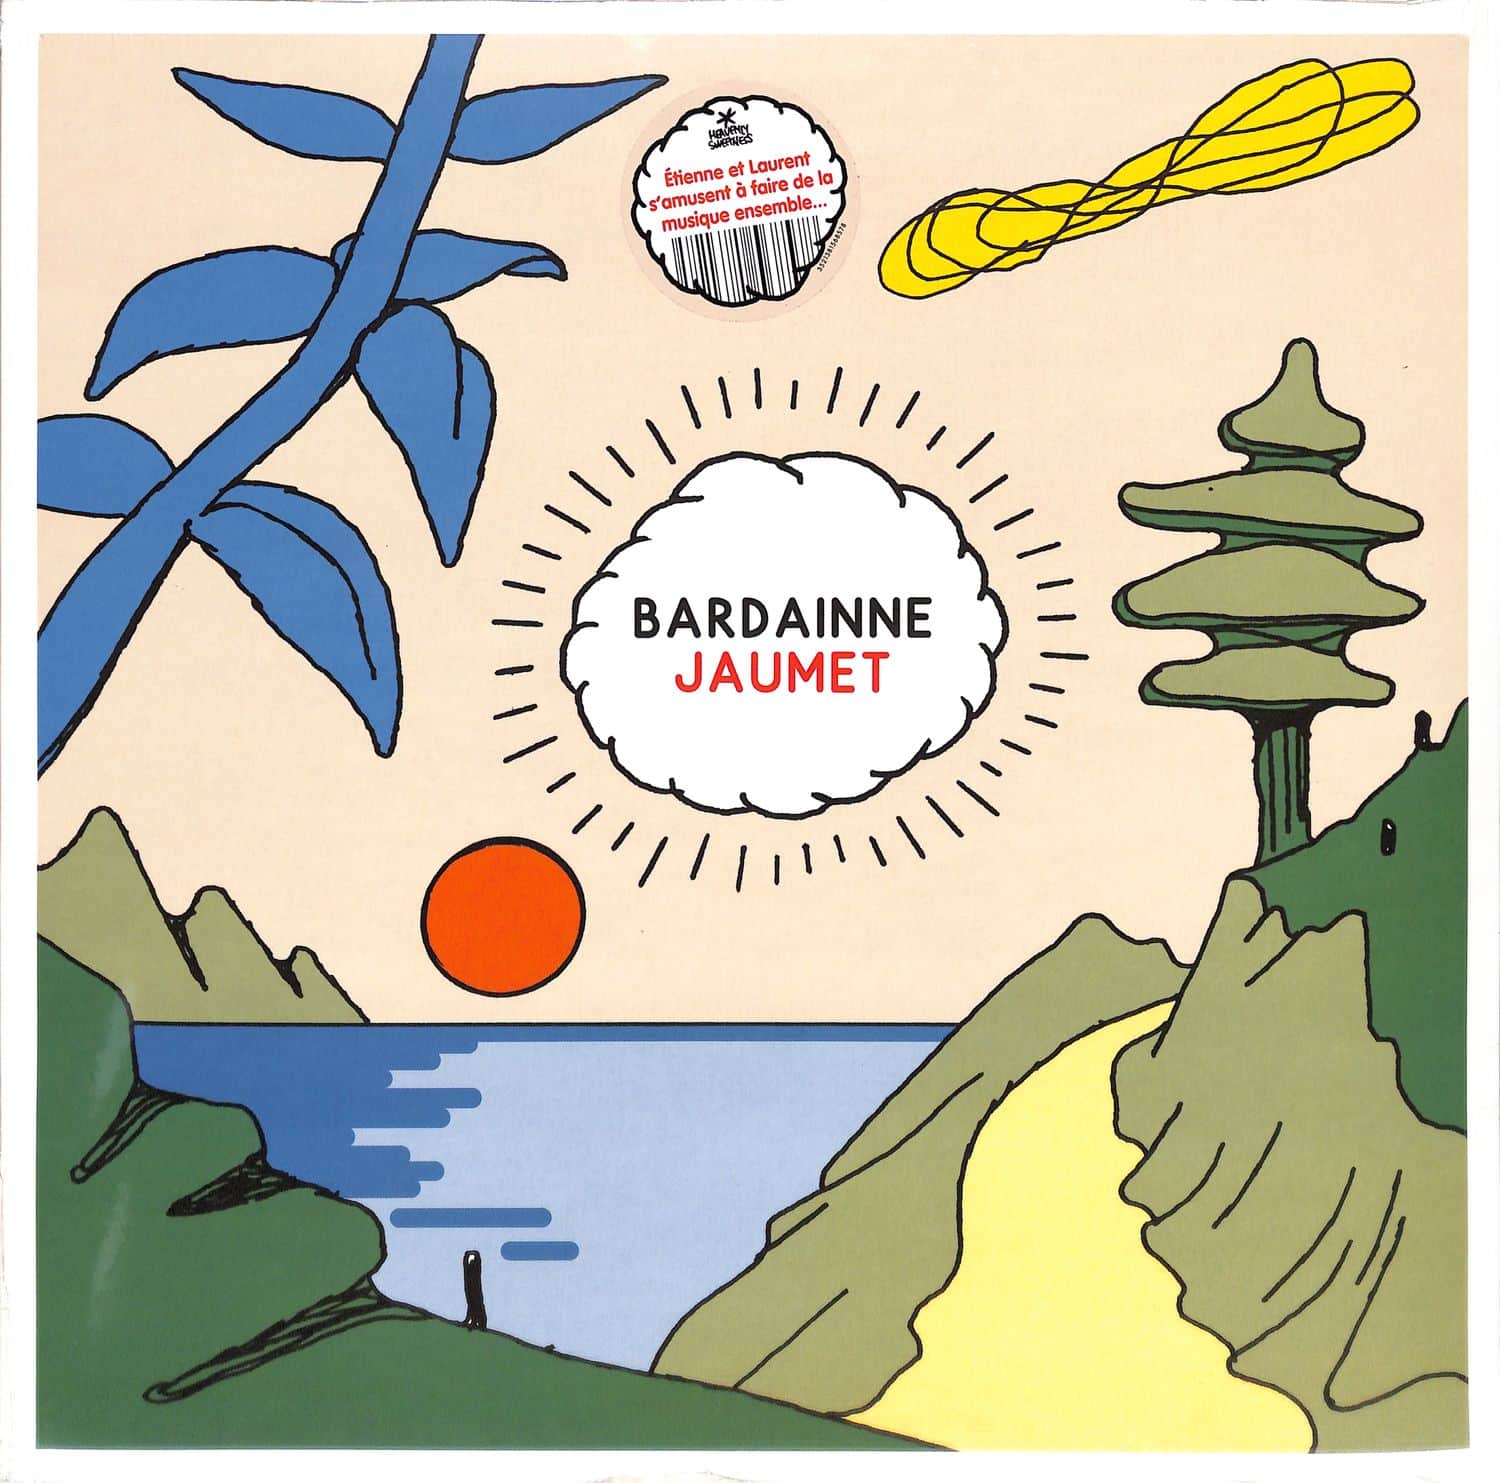 Laurent Bardainne & Etienne Jaumet - BARDAINNE JAUMET